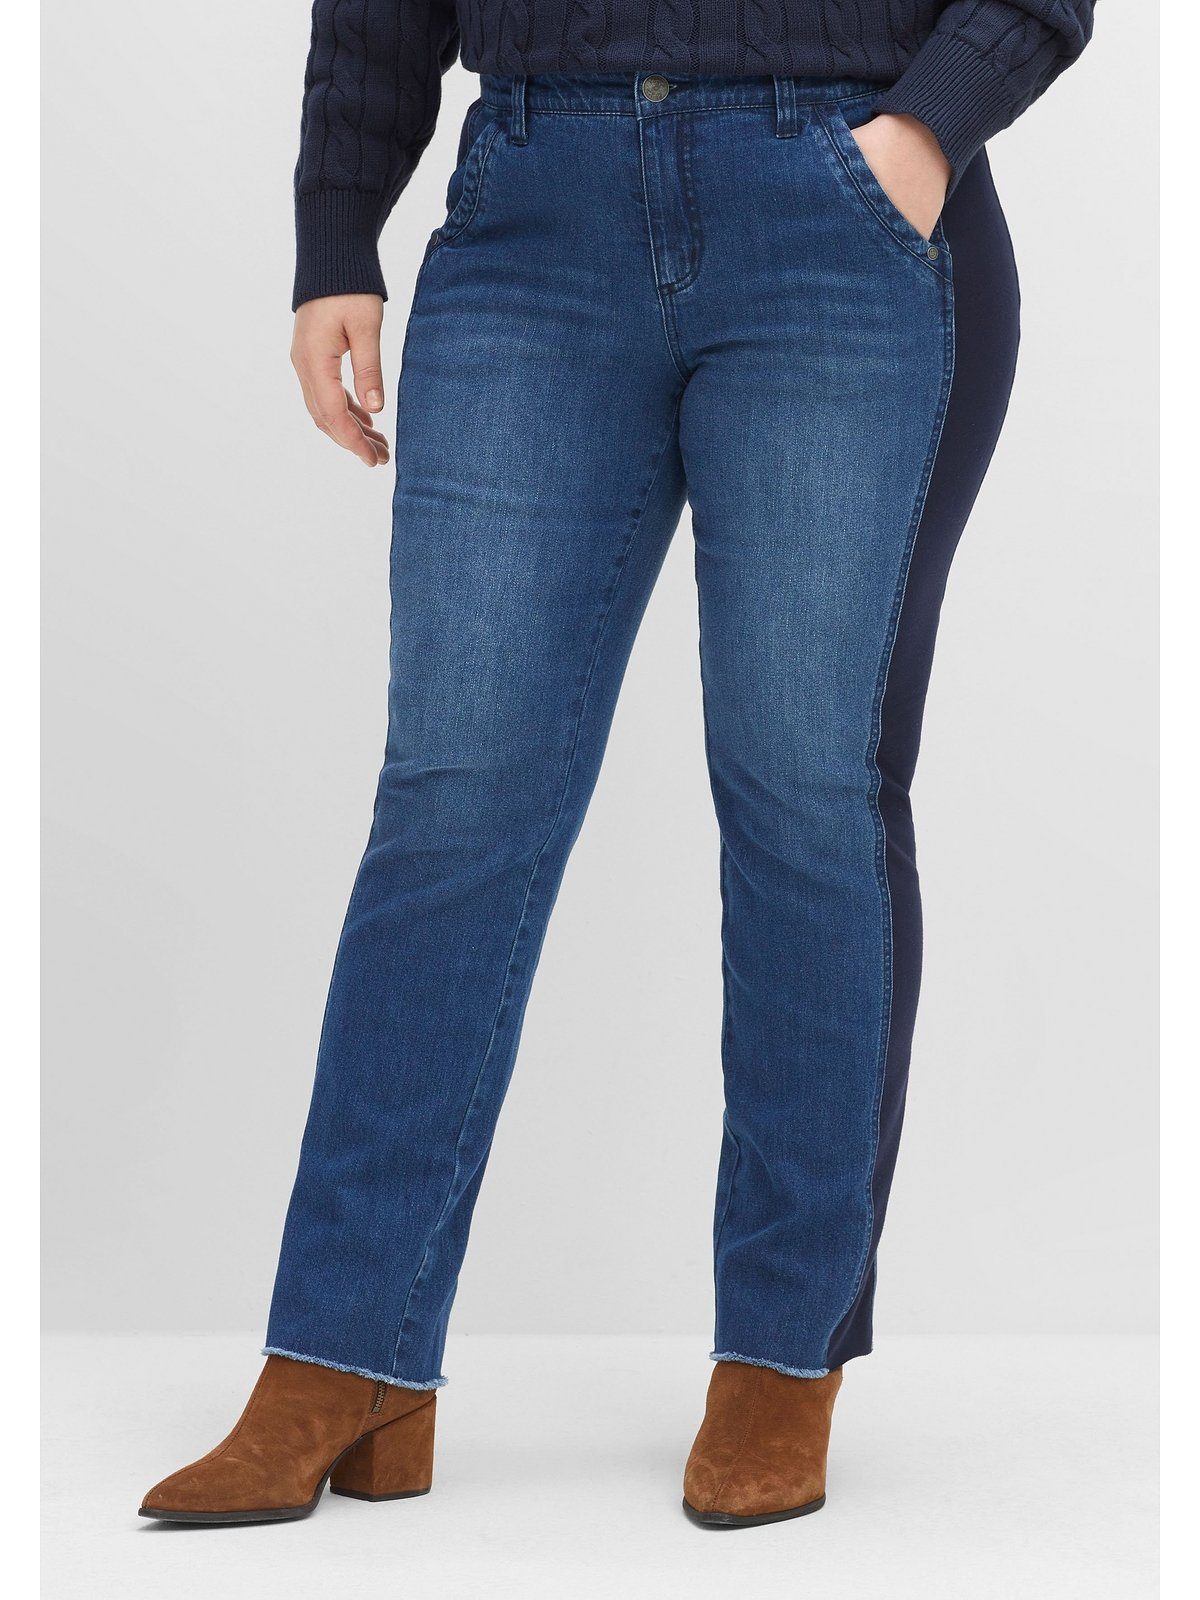 Sheego Jeans für Damen | OTTO kaufen online